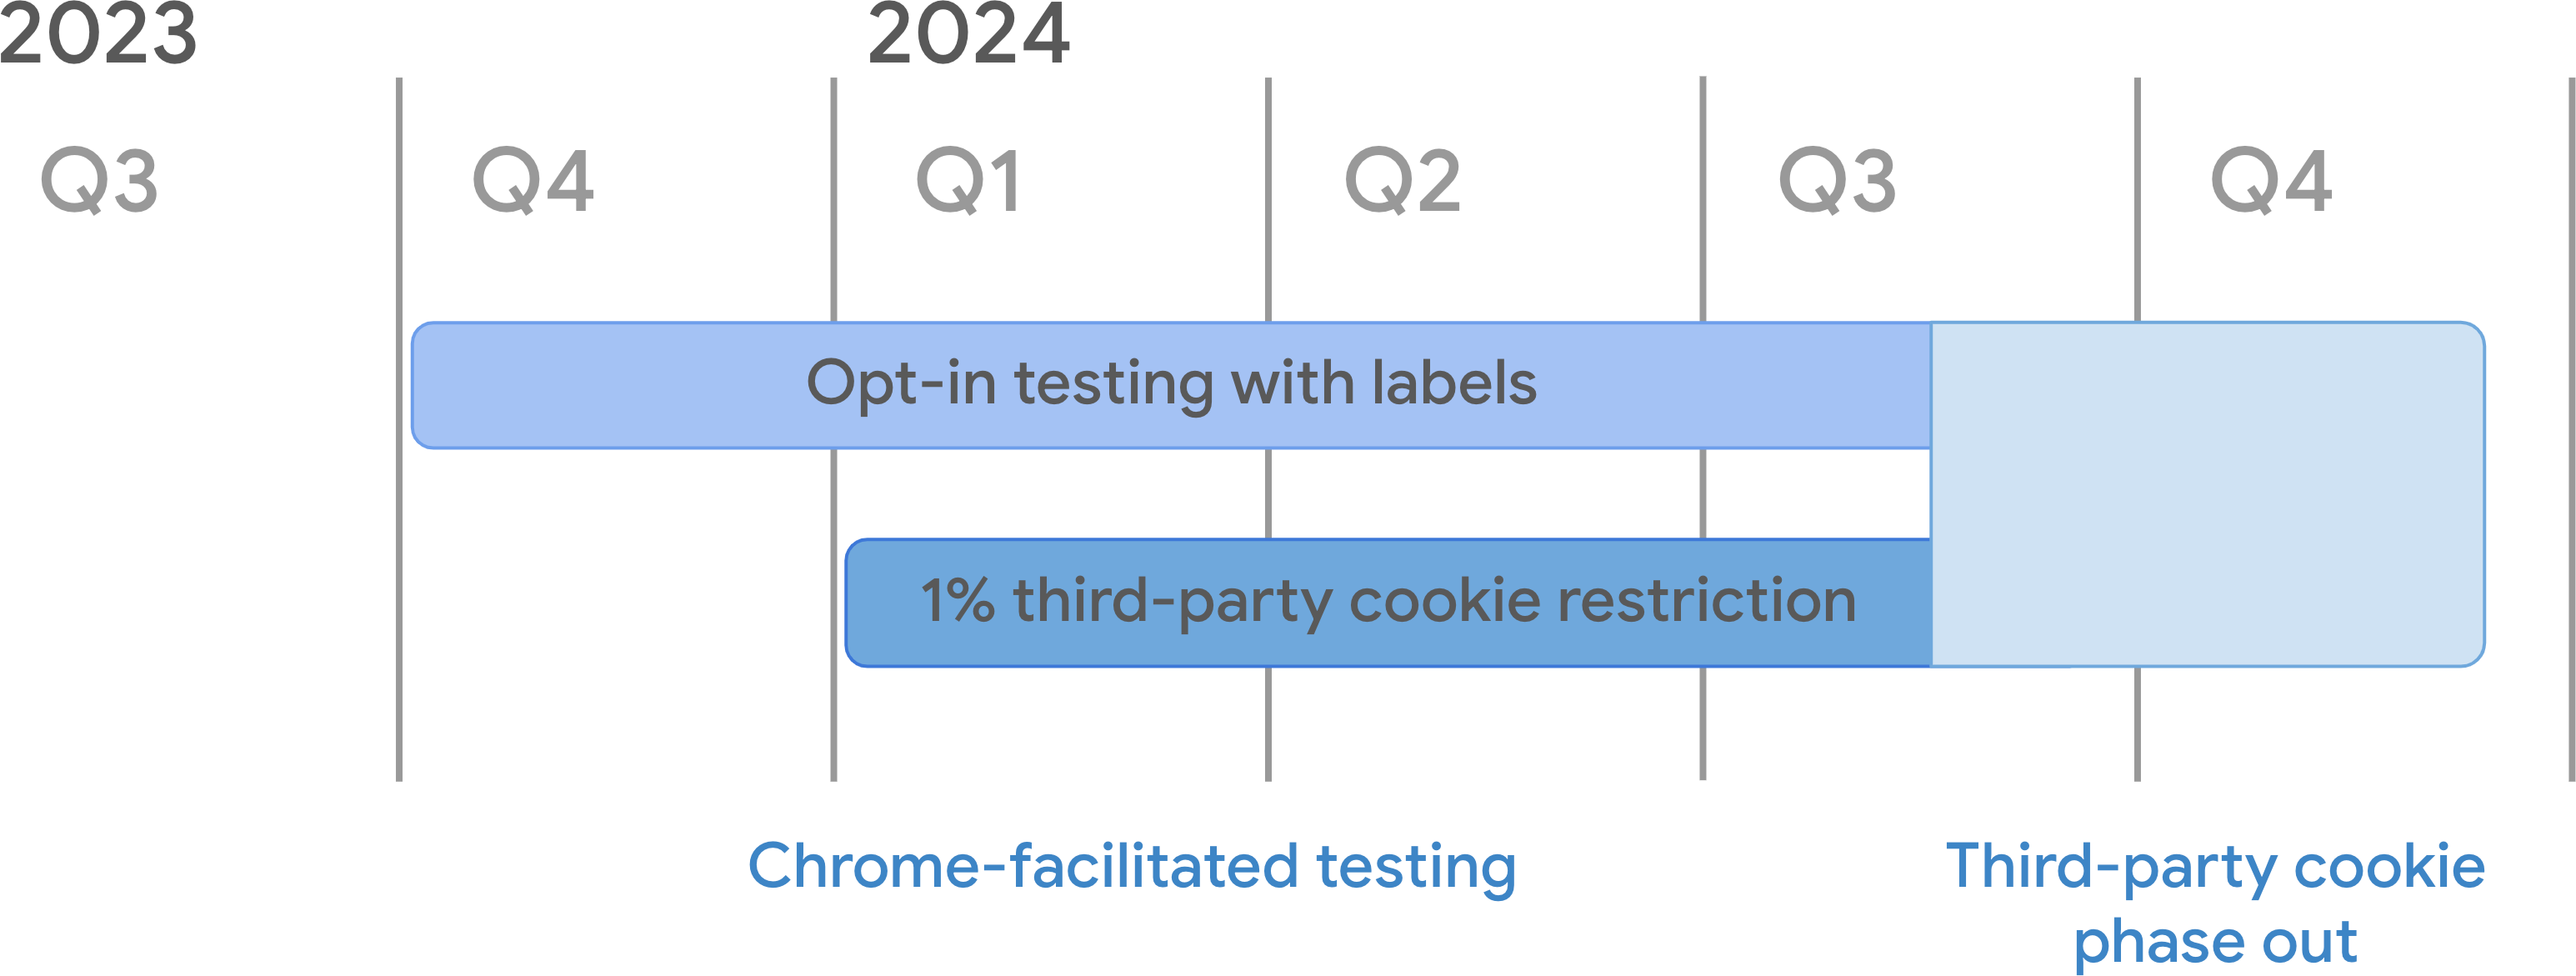 弃用第三方 Cookie 的时间表。在 Chrome 协助测试中，“使用标签模式选择启用测试”模式从 2023 年第 4 季度开始，从 2024 年 1 月 4 日起弃用 1% 的 3PC 弃用模式。两者都会持续到 2024 年第 3 季度中期，届时第三方 Cookie 逐步淘汰开始。